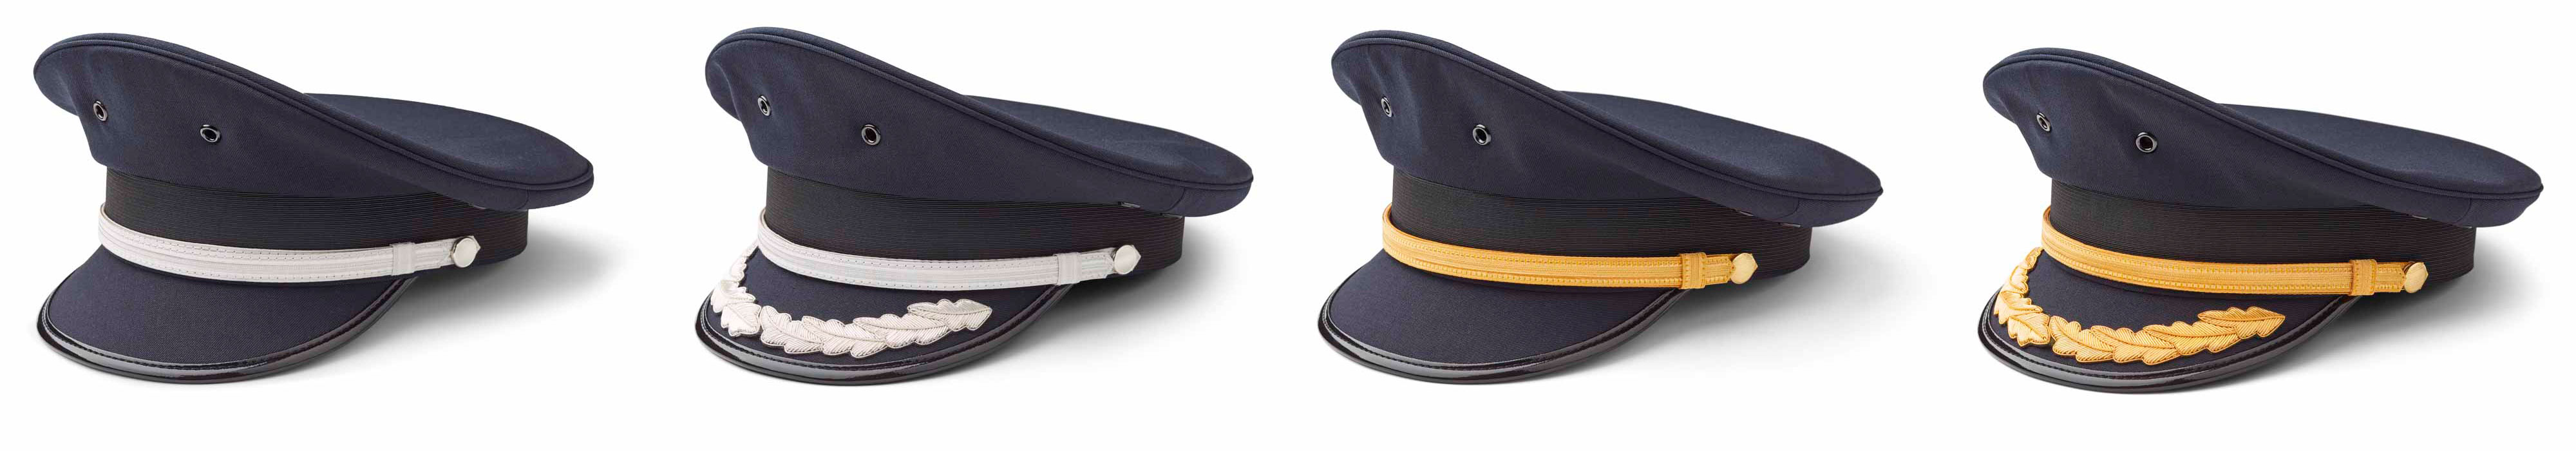 Olino Pilot Caps